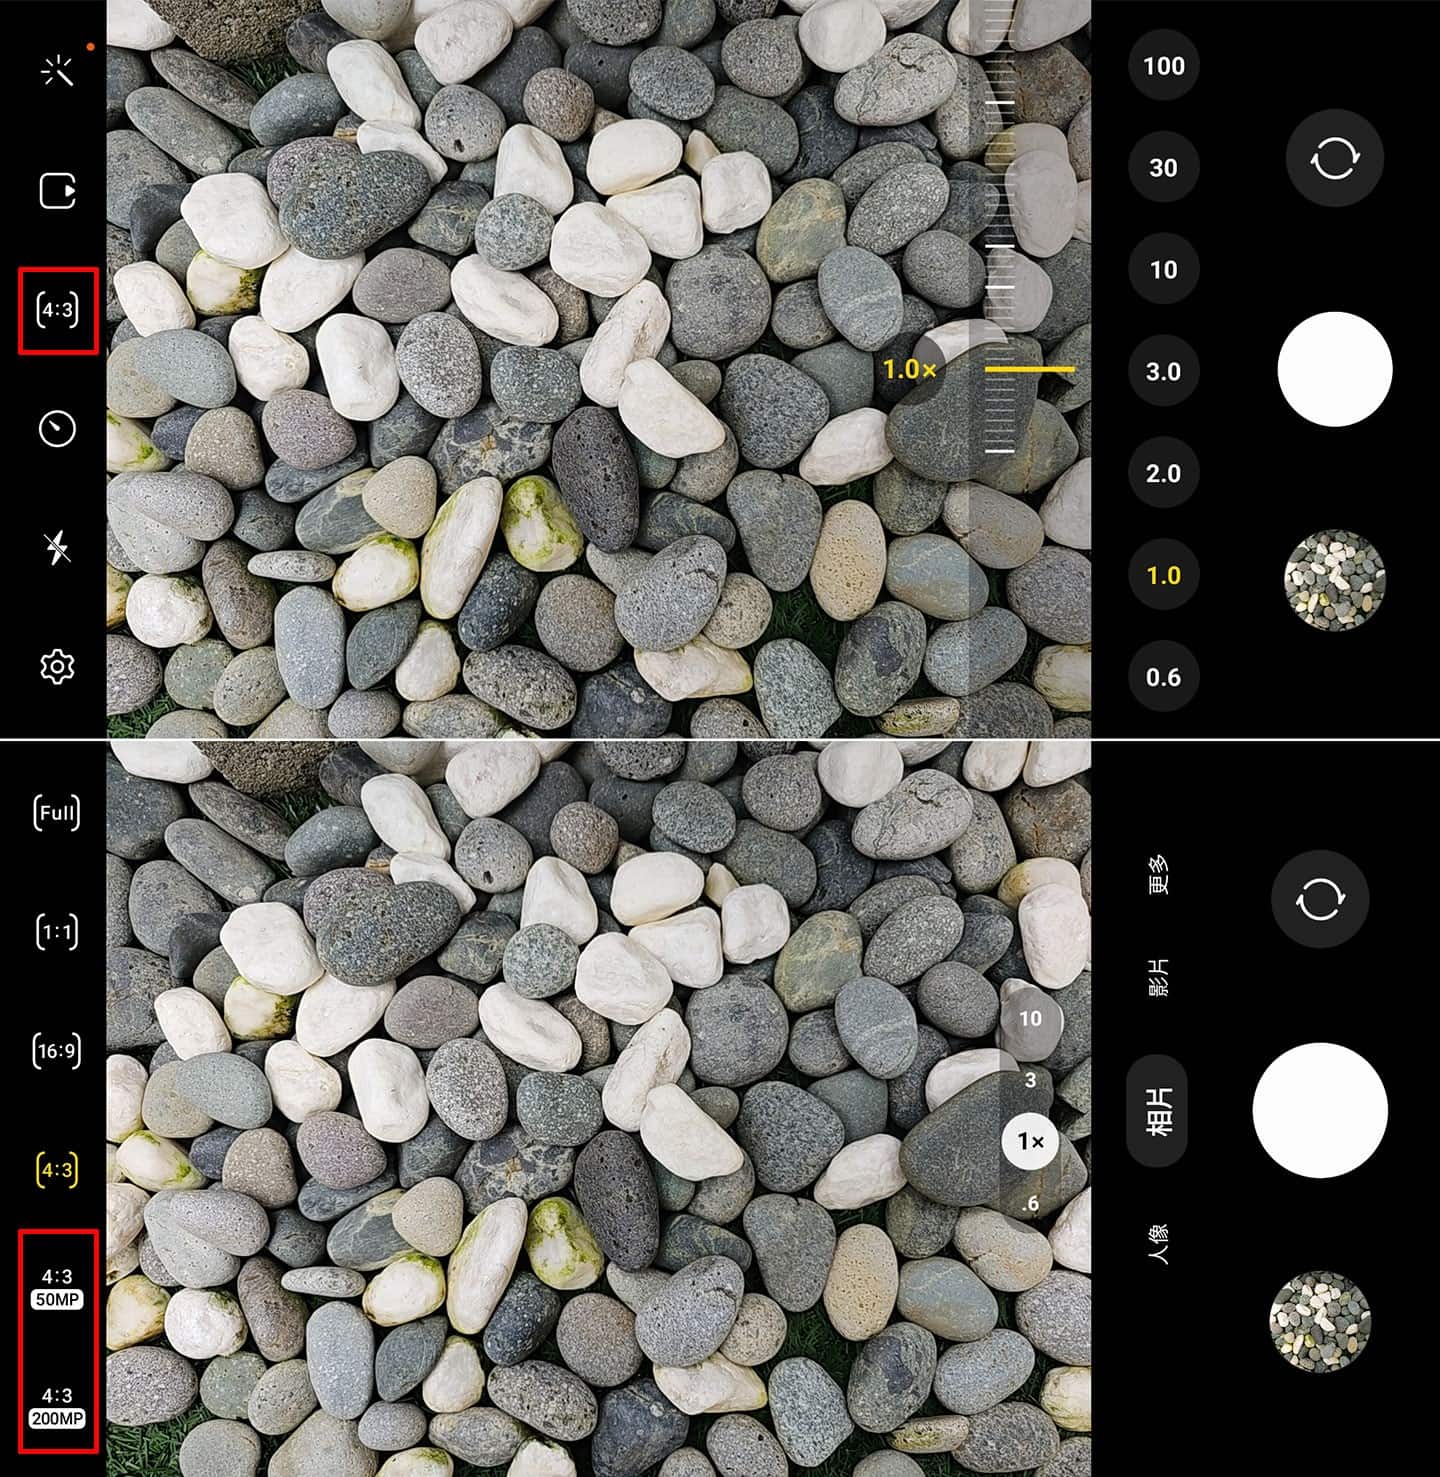 相機拍攝介面左右可以找到快速切換照片解析度的選項，點選後在 4:3 的比例除了預的 1200 萬畫素之外，也有 5000 萬畫素（50MP）與 2 億畫素（200MP）的選項。